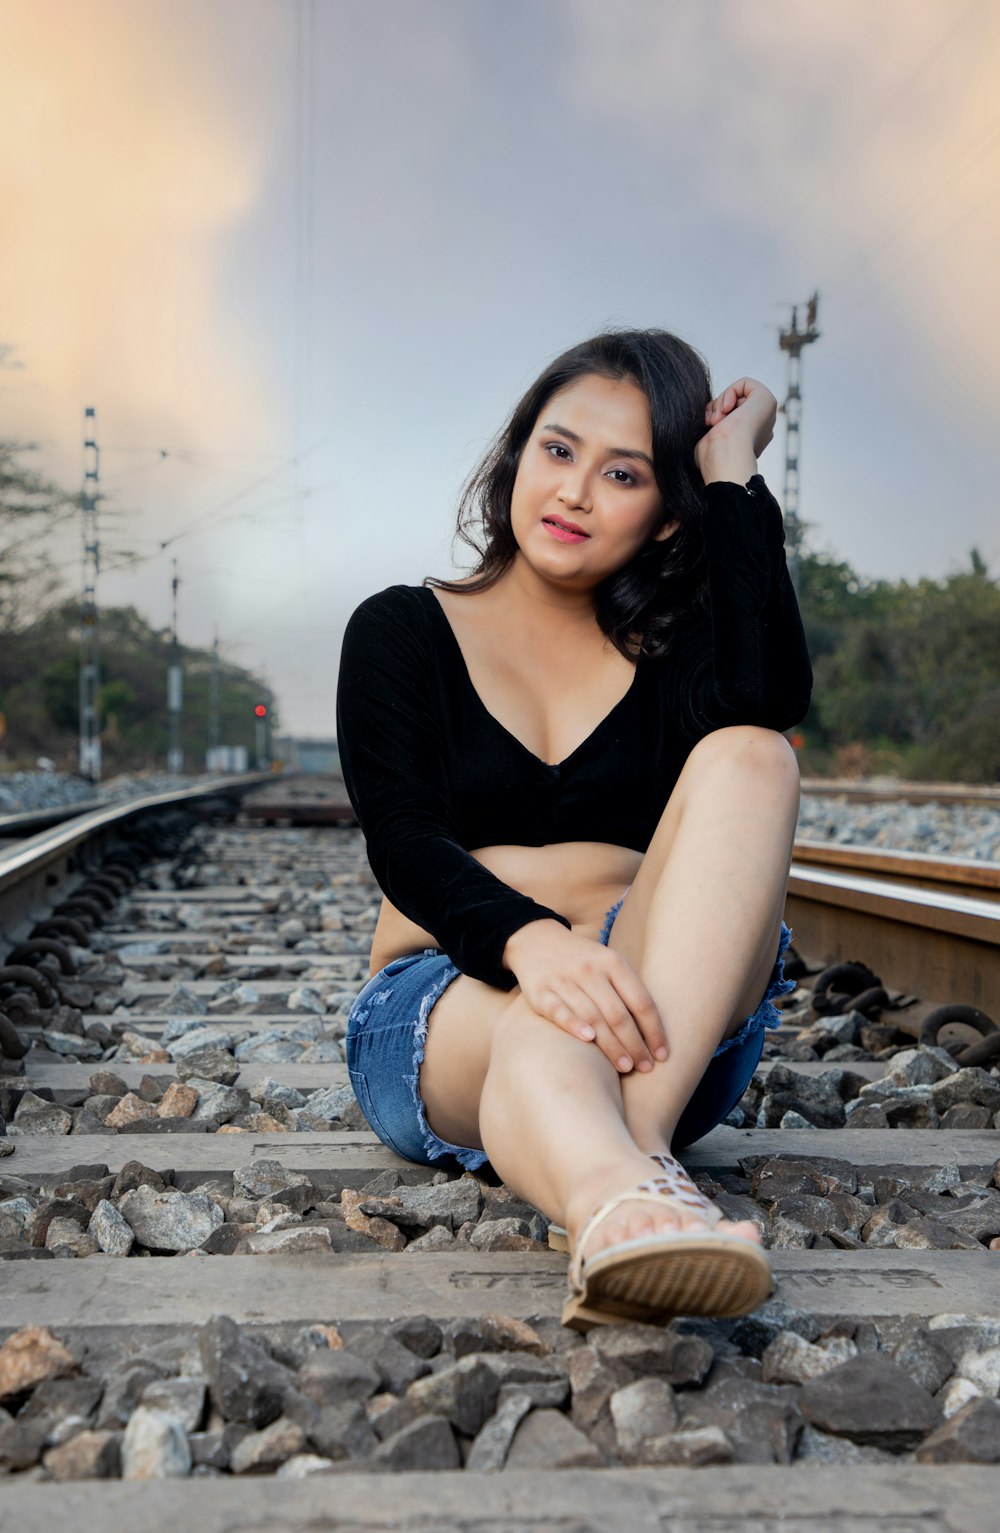 Una donna seduta su un binario del treno con le gambe incrociate